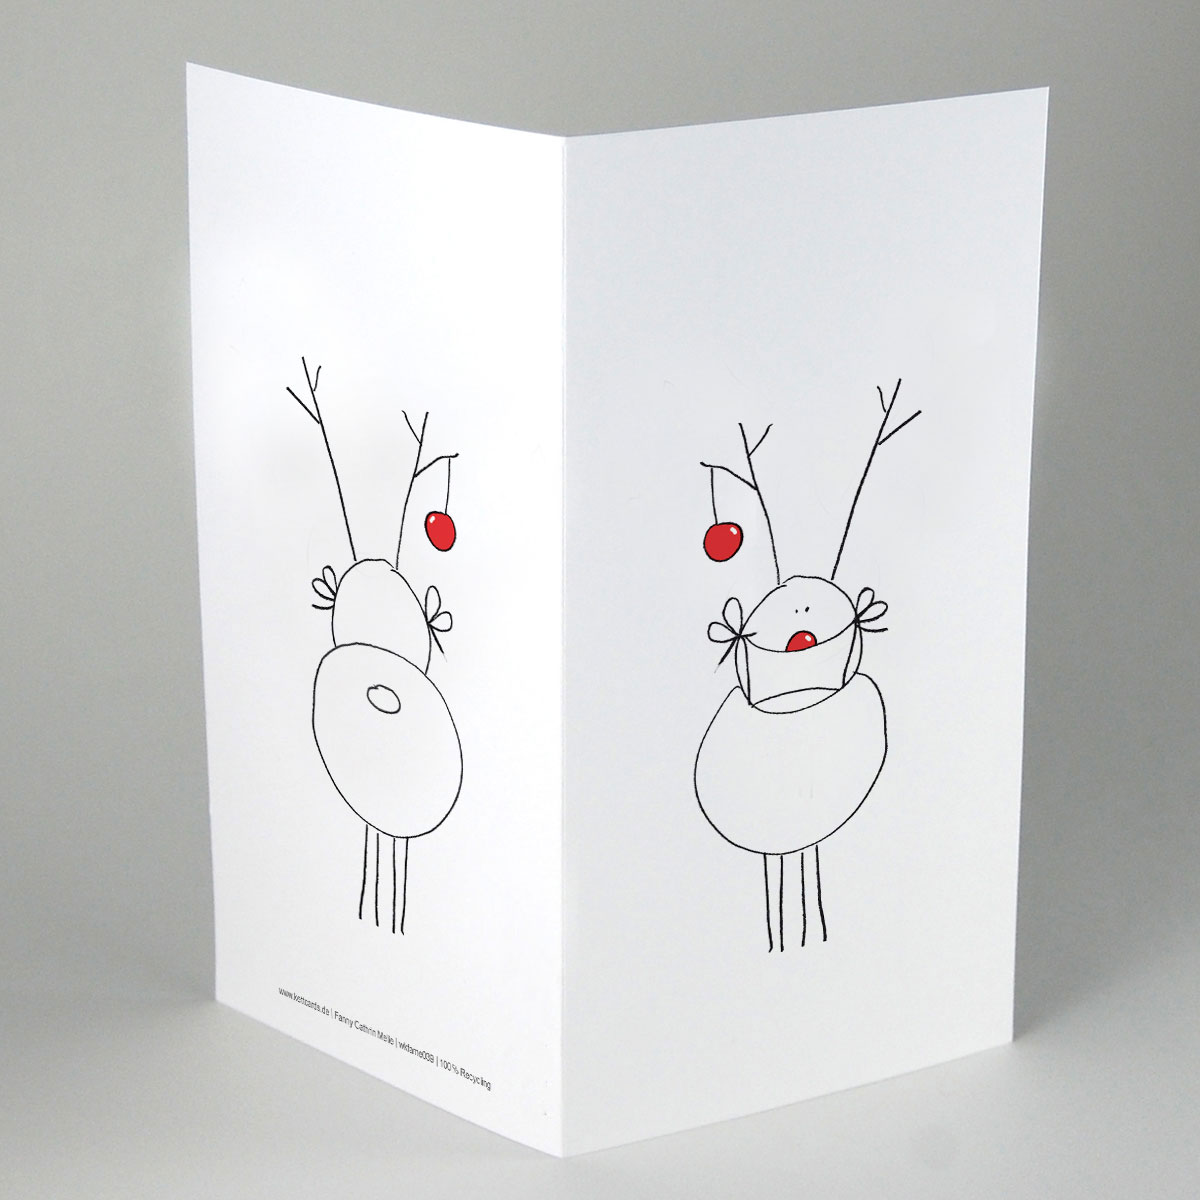 witzige Weihnachtskarten für die Coronazeit: Rudolph mit Maske